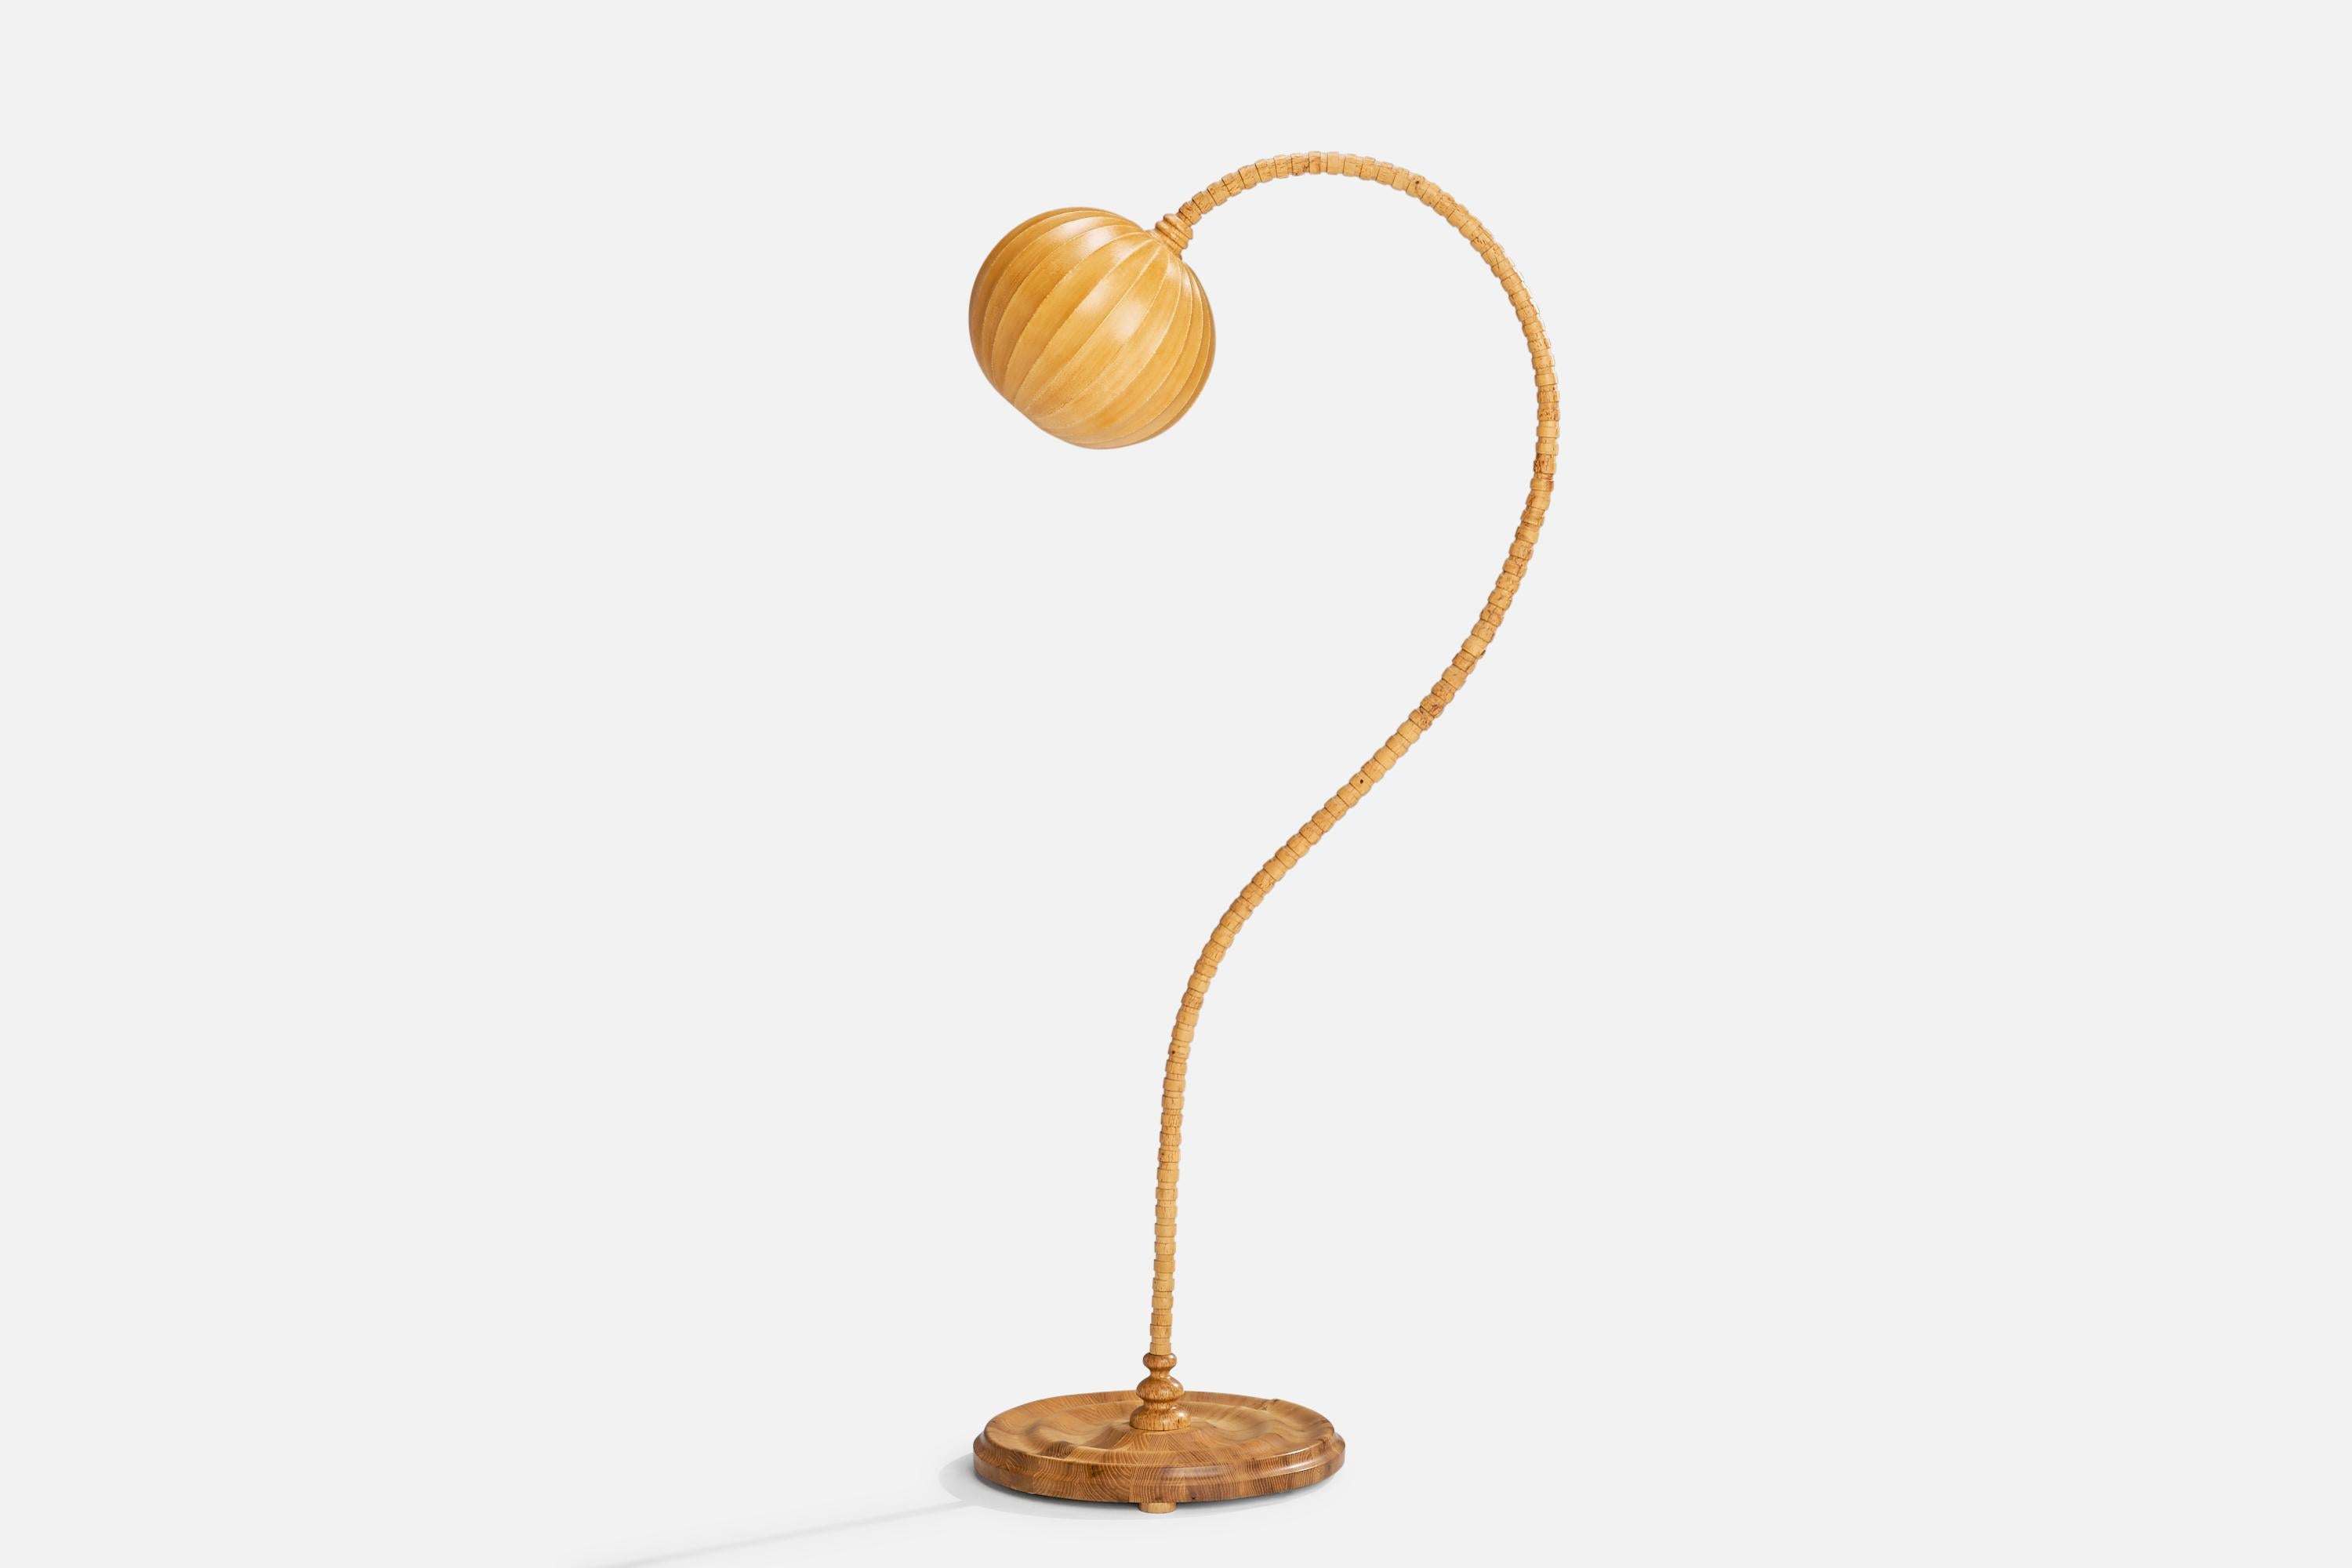 Lampadaire en bouleau, pin et coton ciré masur, conçu et produit en Suède, c. années 1960.

Dimensions globales (pouces) : 61,5